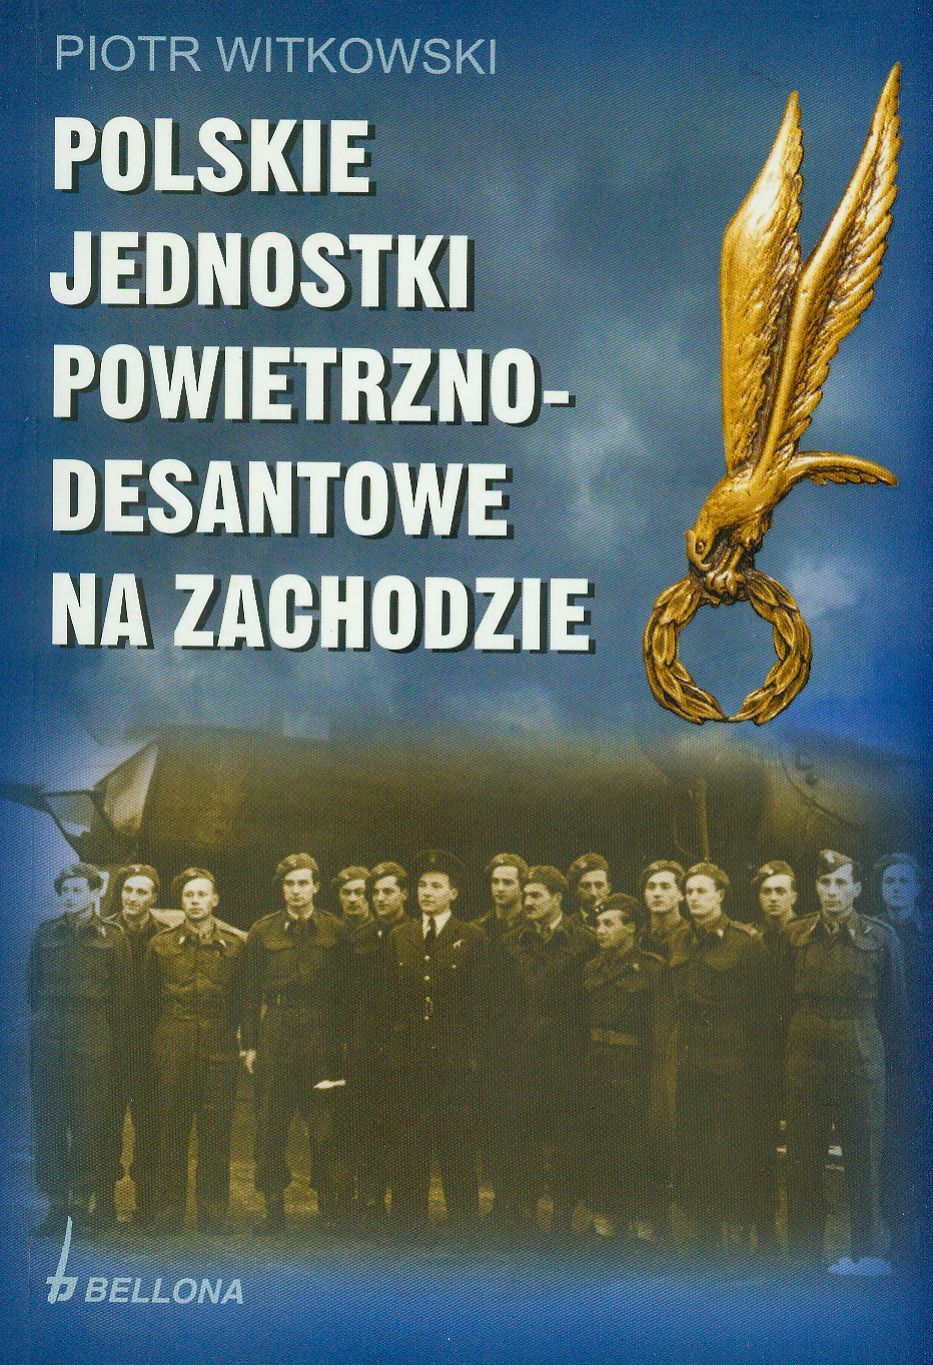 Artykuł powstał między innymi w oparciu o książkę Piotra Witkowskiego pod tytułem "Polskie jednostki powietrzno-desantowe na Zachodzie" (Bellona SA 2009).